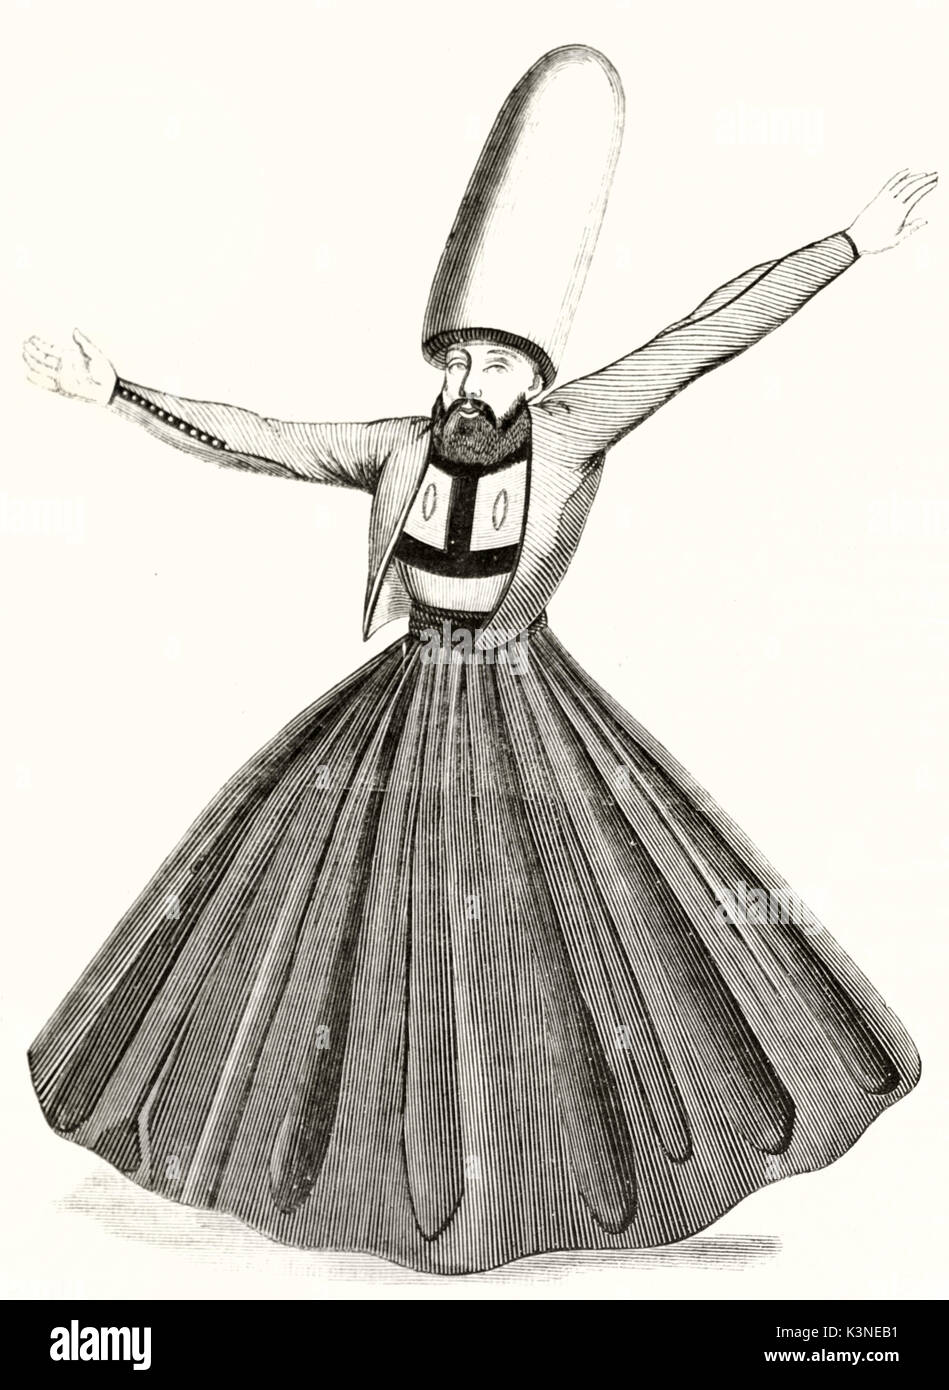 L'ordre Mevlevi antique (l'homme lancer du chemin soufi) également connu  sous le nom de derviches tourneurs. Corps plein d'un étrange costume avec  une longue jupe. Magasin pittoresque Paris 1839 Photo Stock -